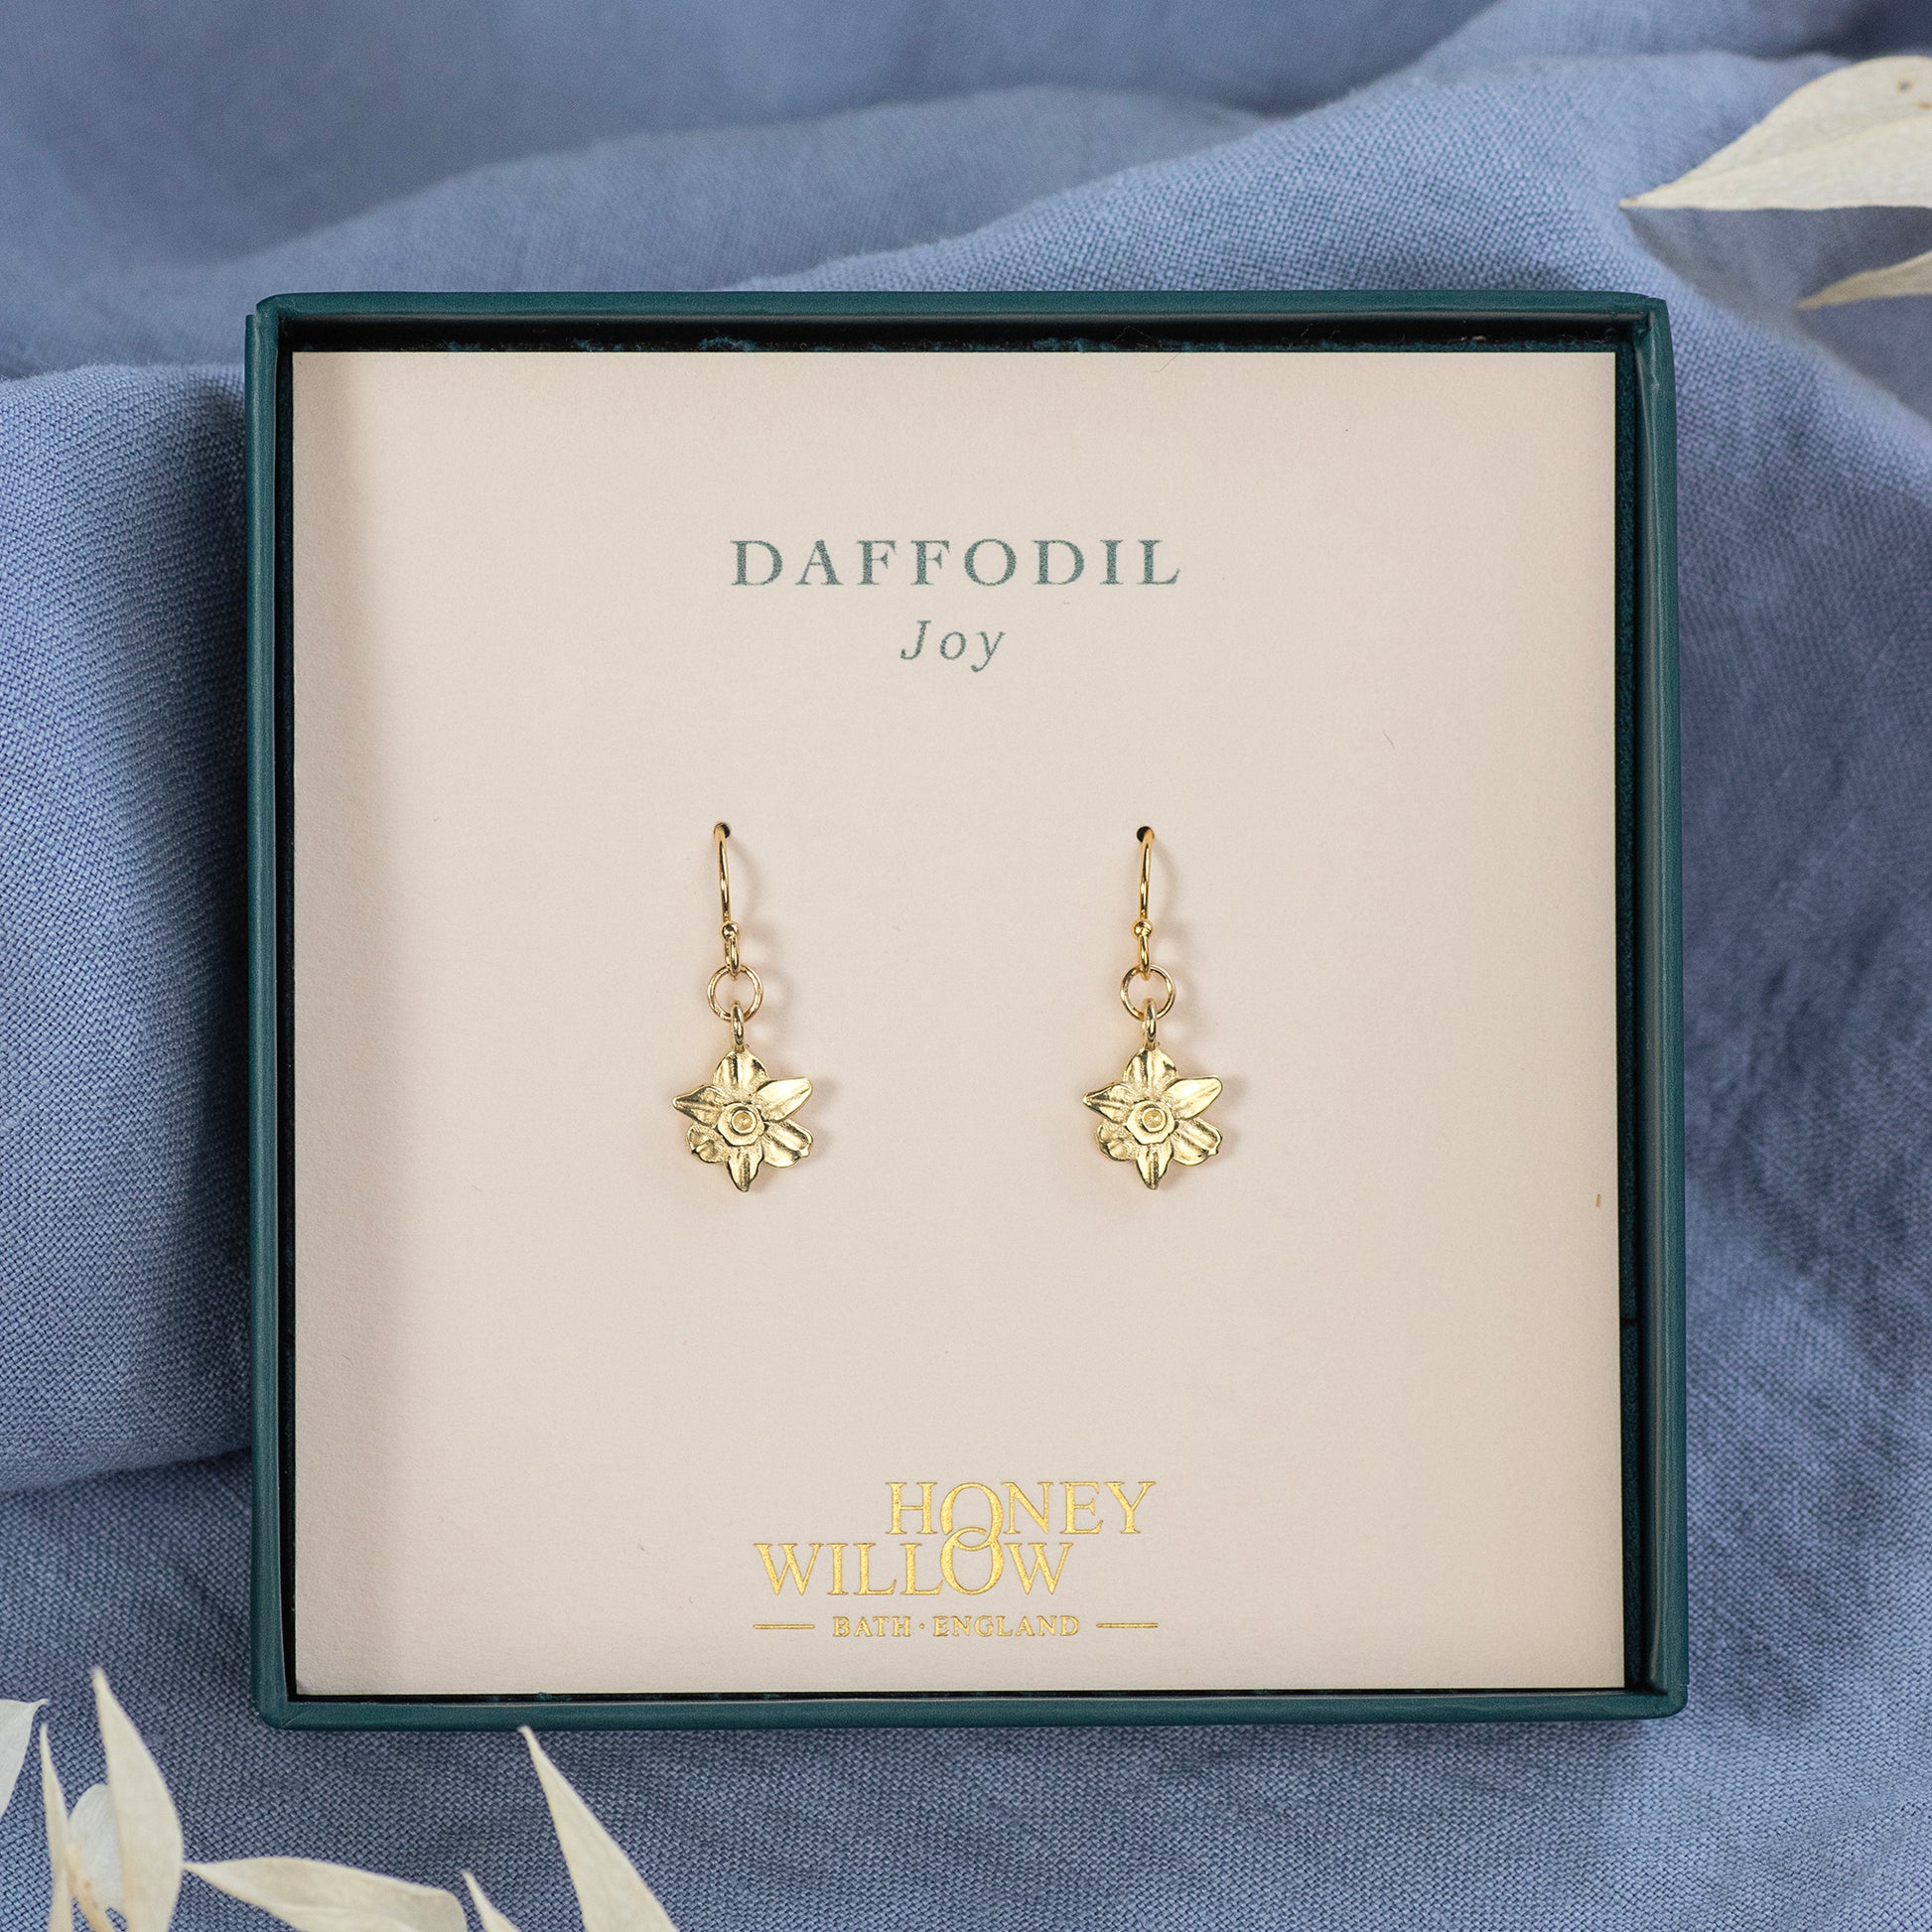 Daffodil Flower Earrings - Joy - 9kt Gold